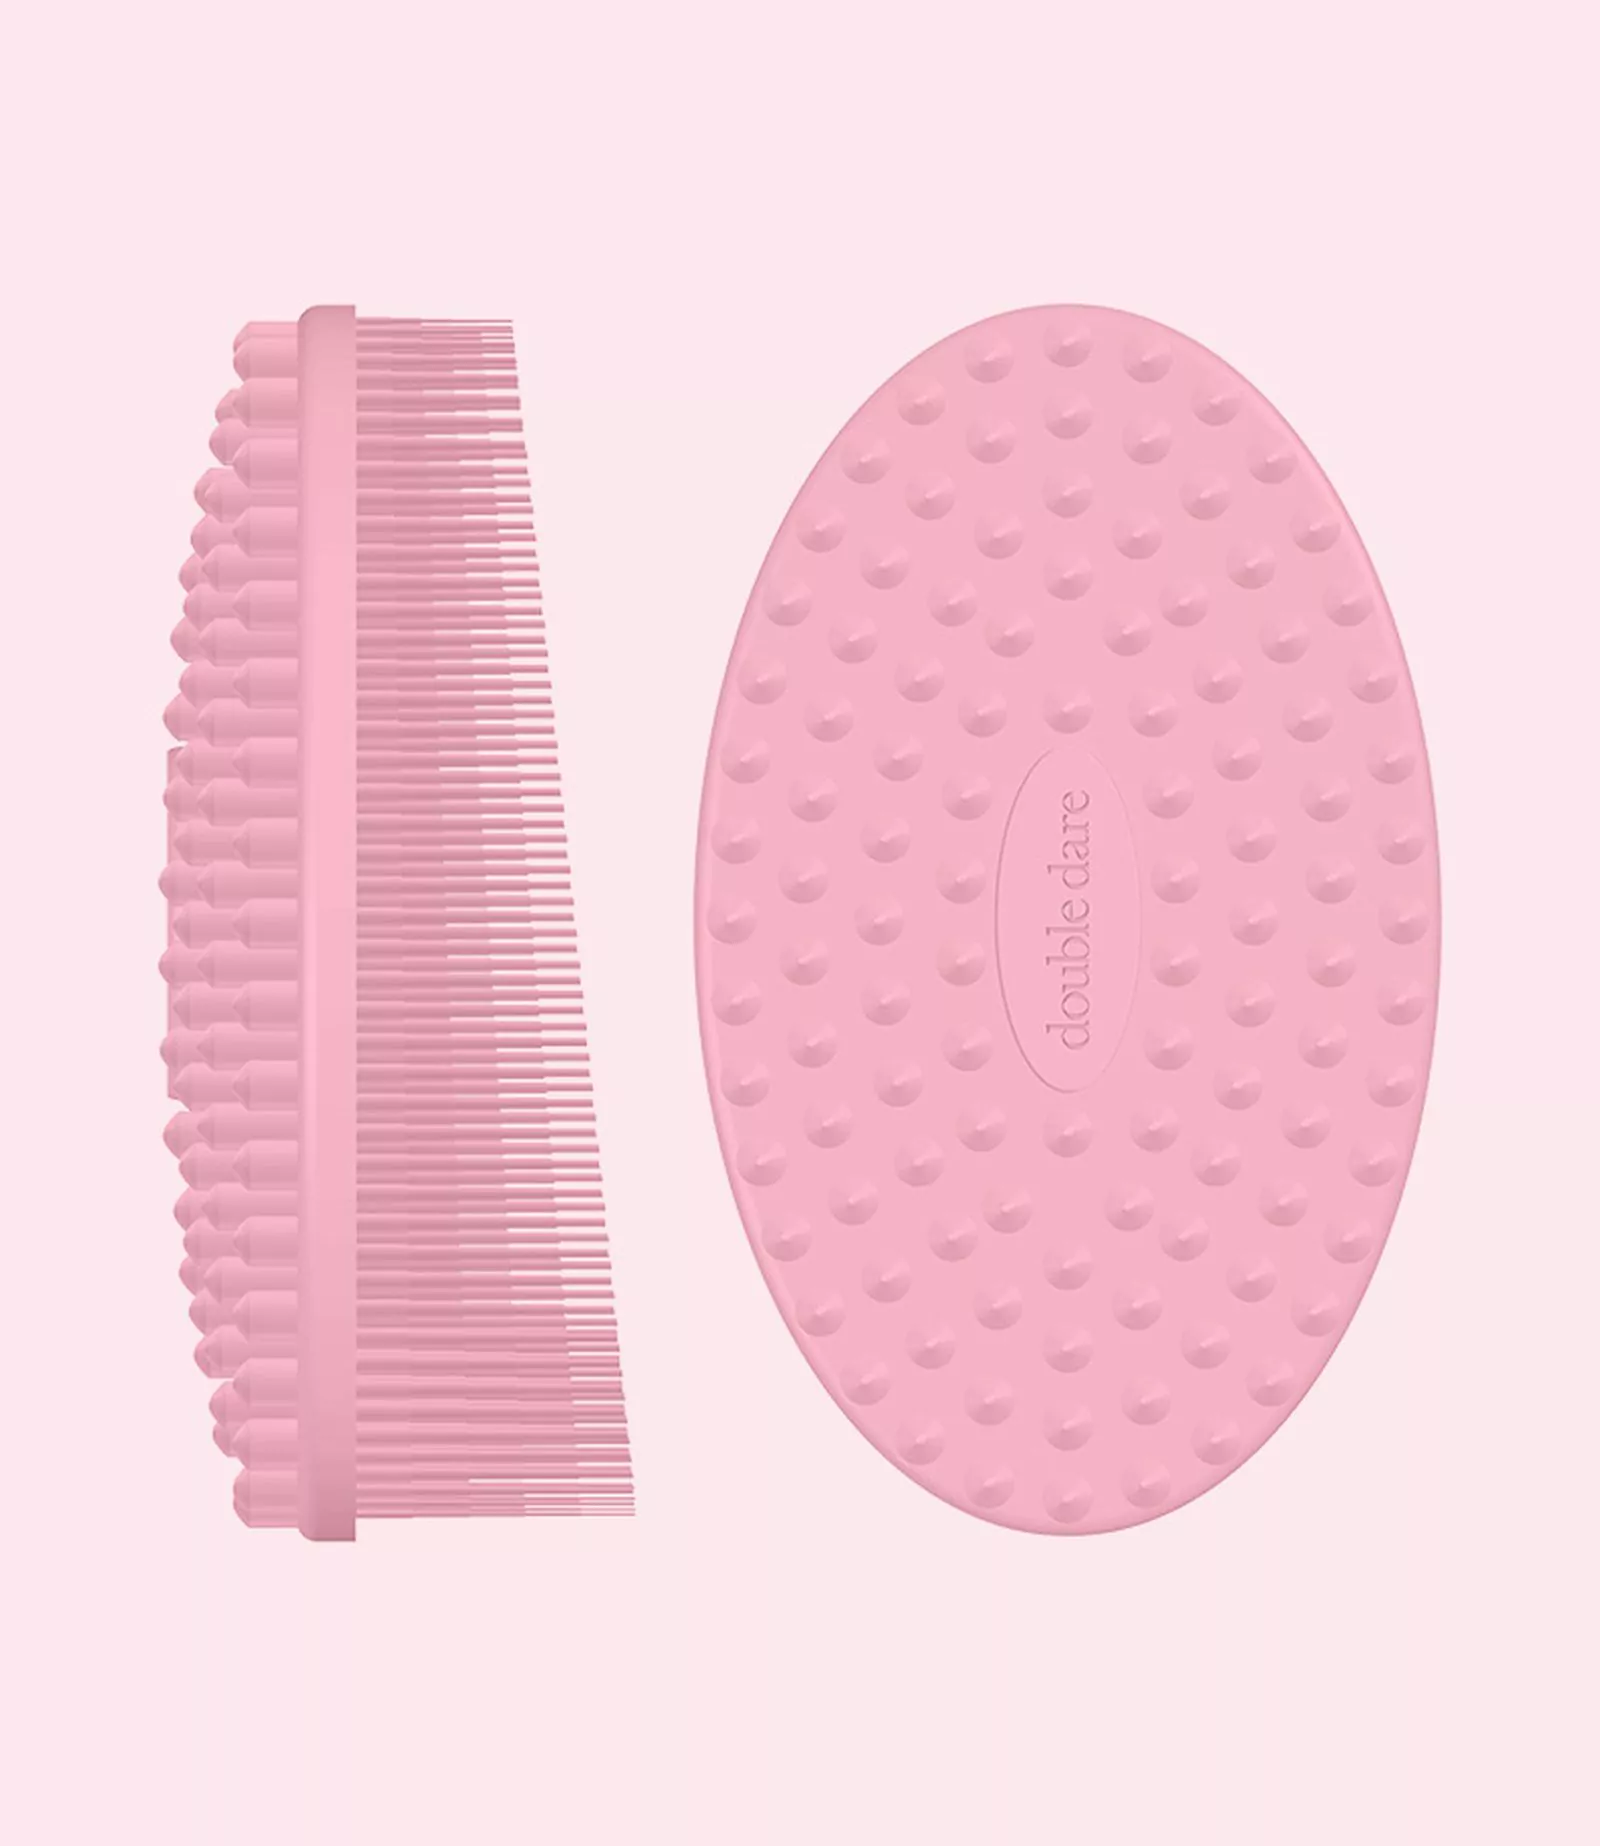 Double Dare Omg!, силиконовая щётка для очищения и массажа кожи лица Innovatuve Multi-Functional Buddy Pink